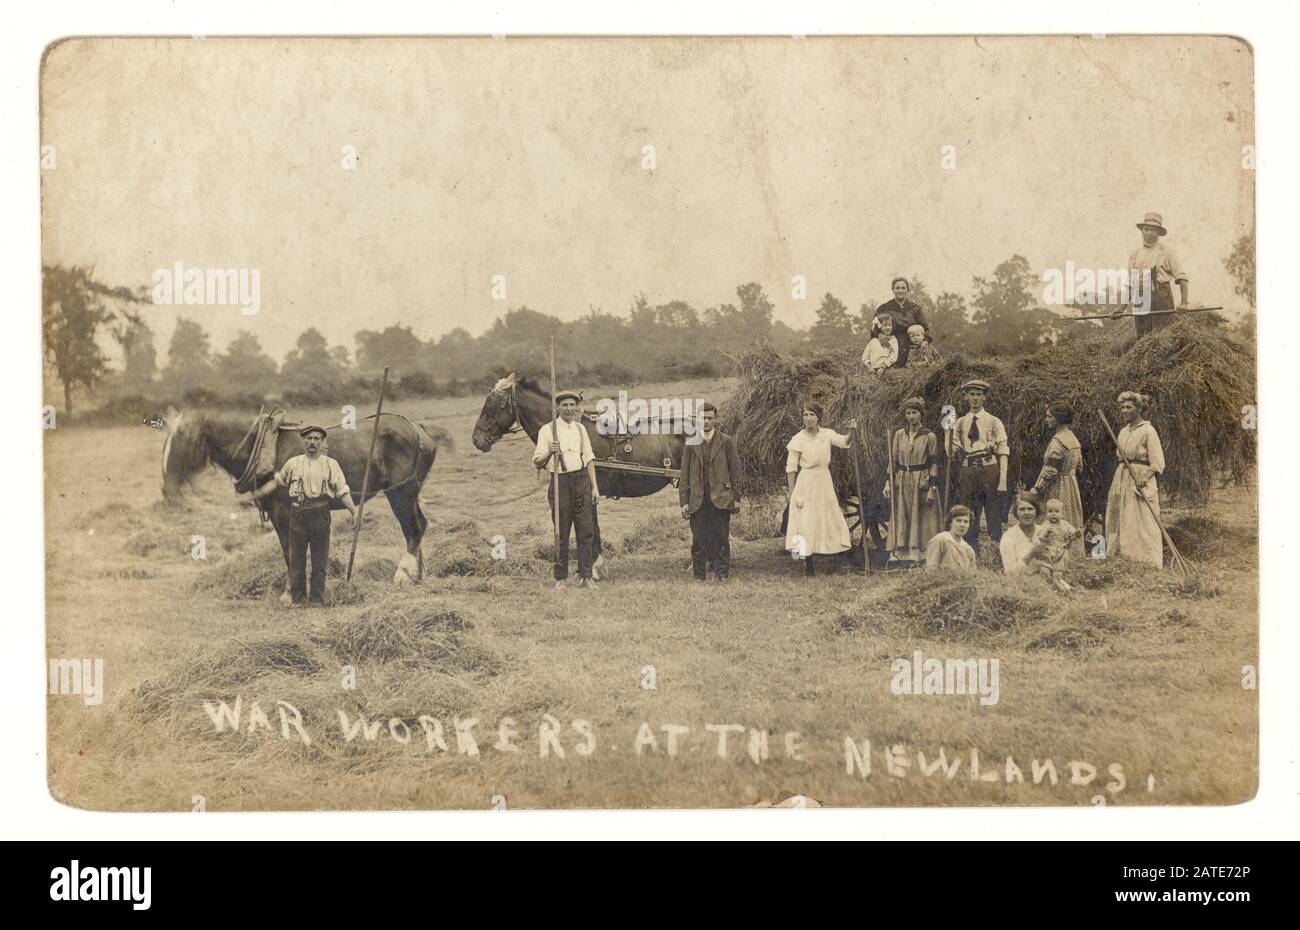 Postkarte aus der 1. Ära von Landarbeitern mit mehreren Land-Girls, die Land-Army-Armbänder tragen, um sie von den Landarbeitern zu unterscheiden und zu zeigen, dass sie sich im aktiven Kriegsdienst befinden. Foto aufgenommen in Newlands, ca. 1917, Großbritannien Stockfoto